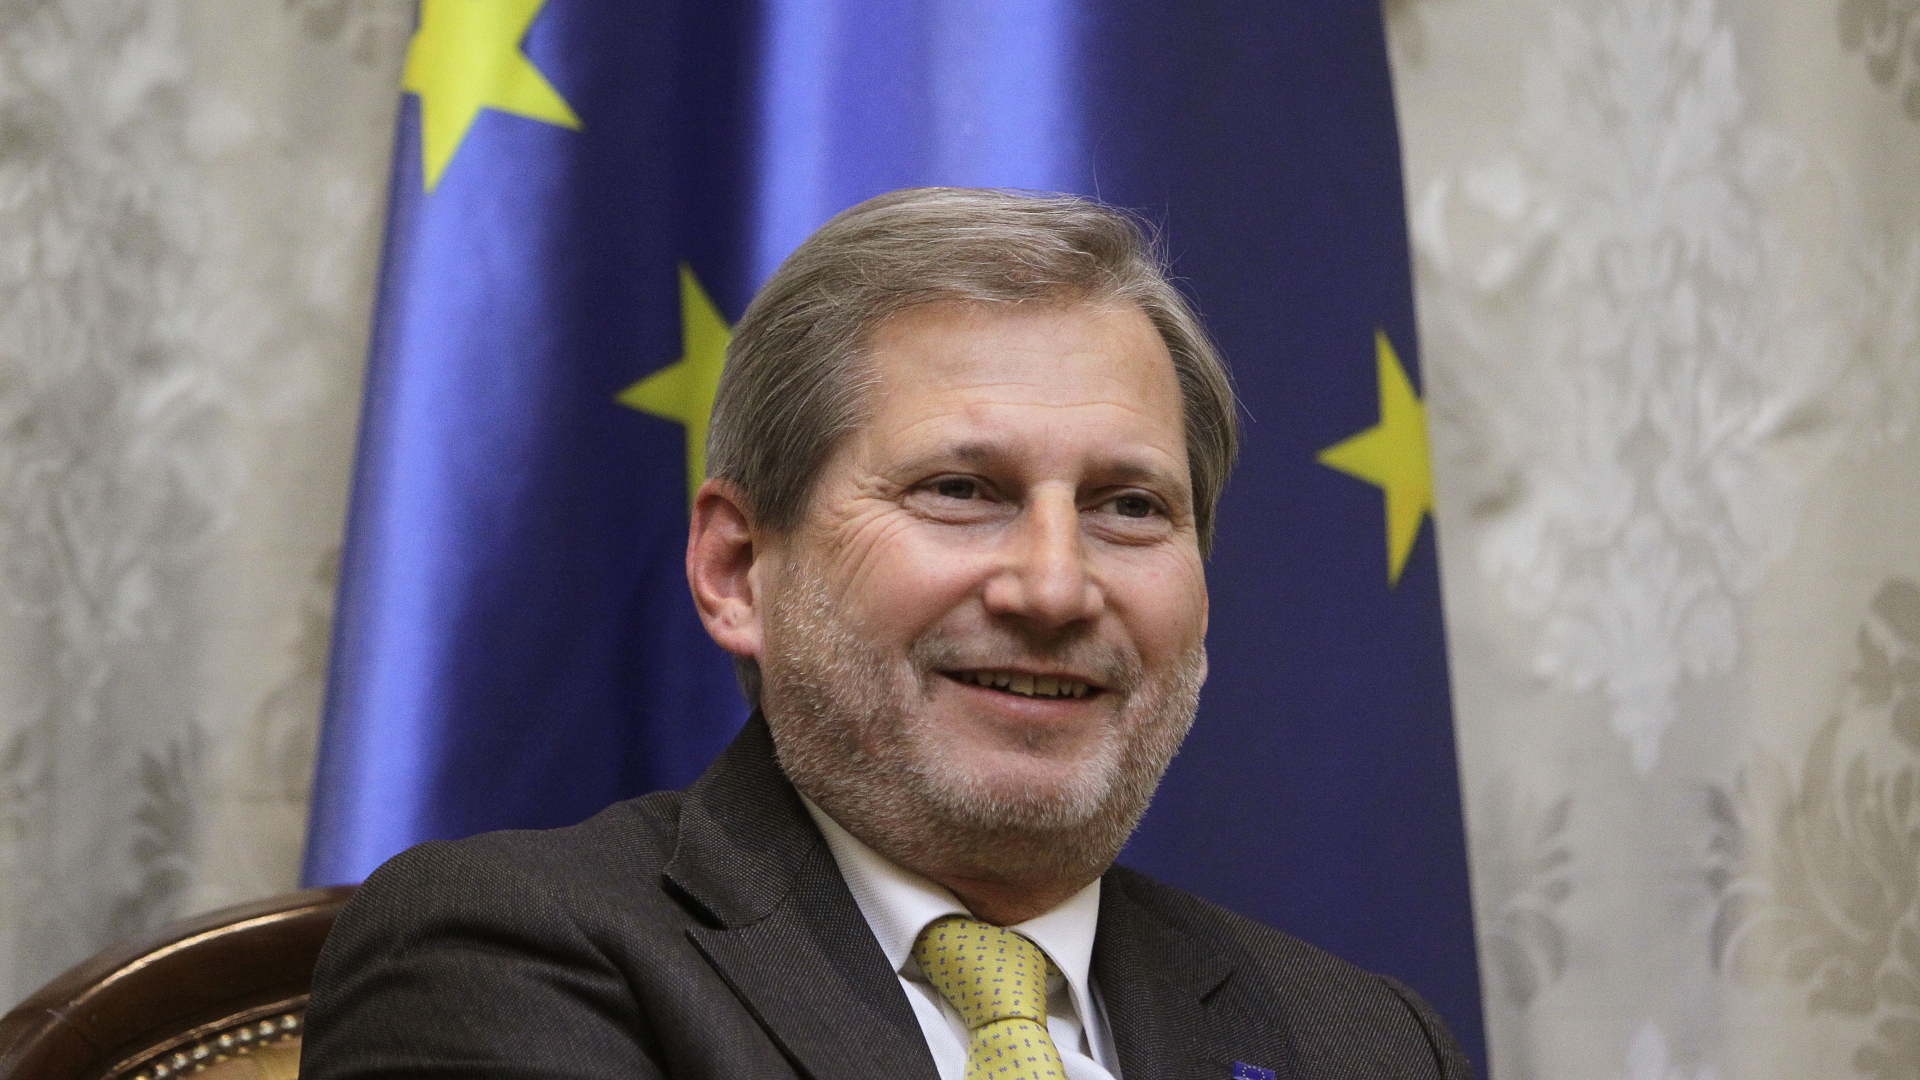 EU-Erweiterungskommissar Johannes Hahn befürwortet Verhandlungen mit Westbalkanstaaten. | CUKIC/EPA-EFE/REX/Shutterstock